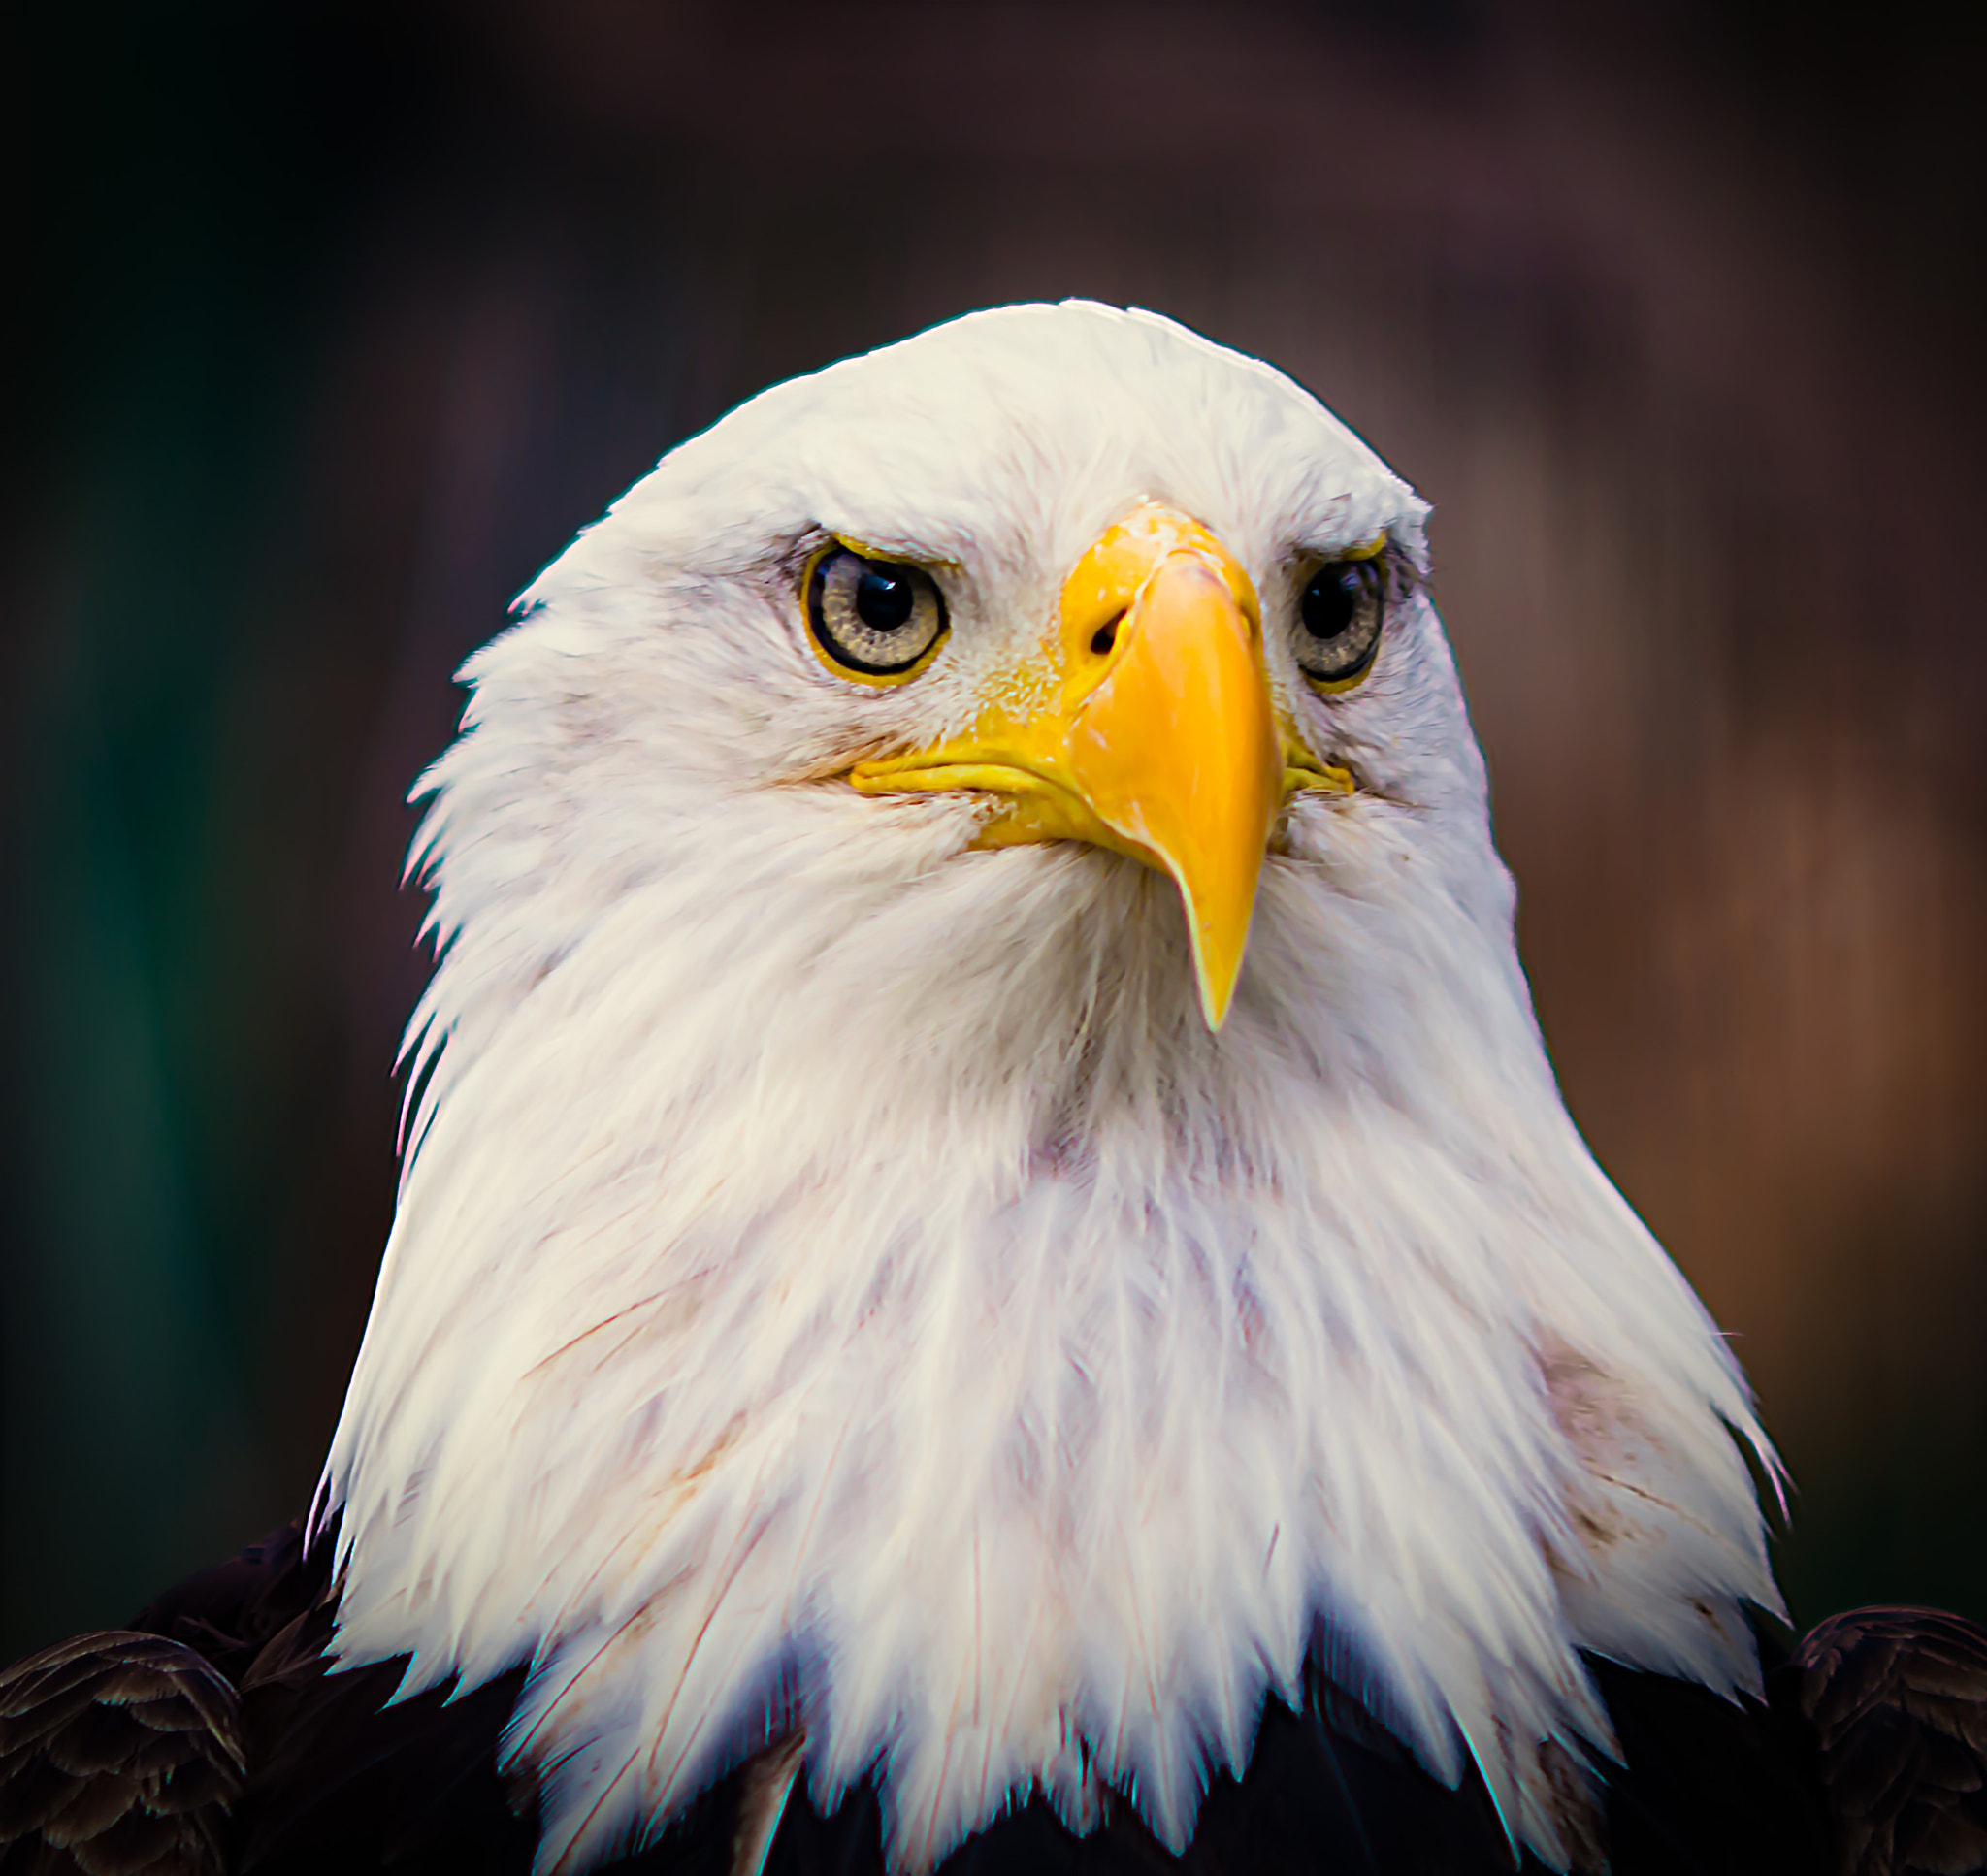 AF DC-Nikkor 135mm f/2D sample photo. Bald eagle portrait photography